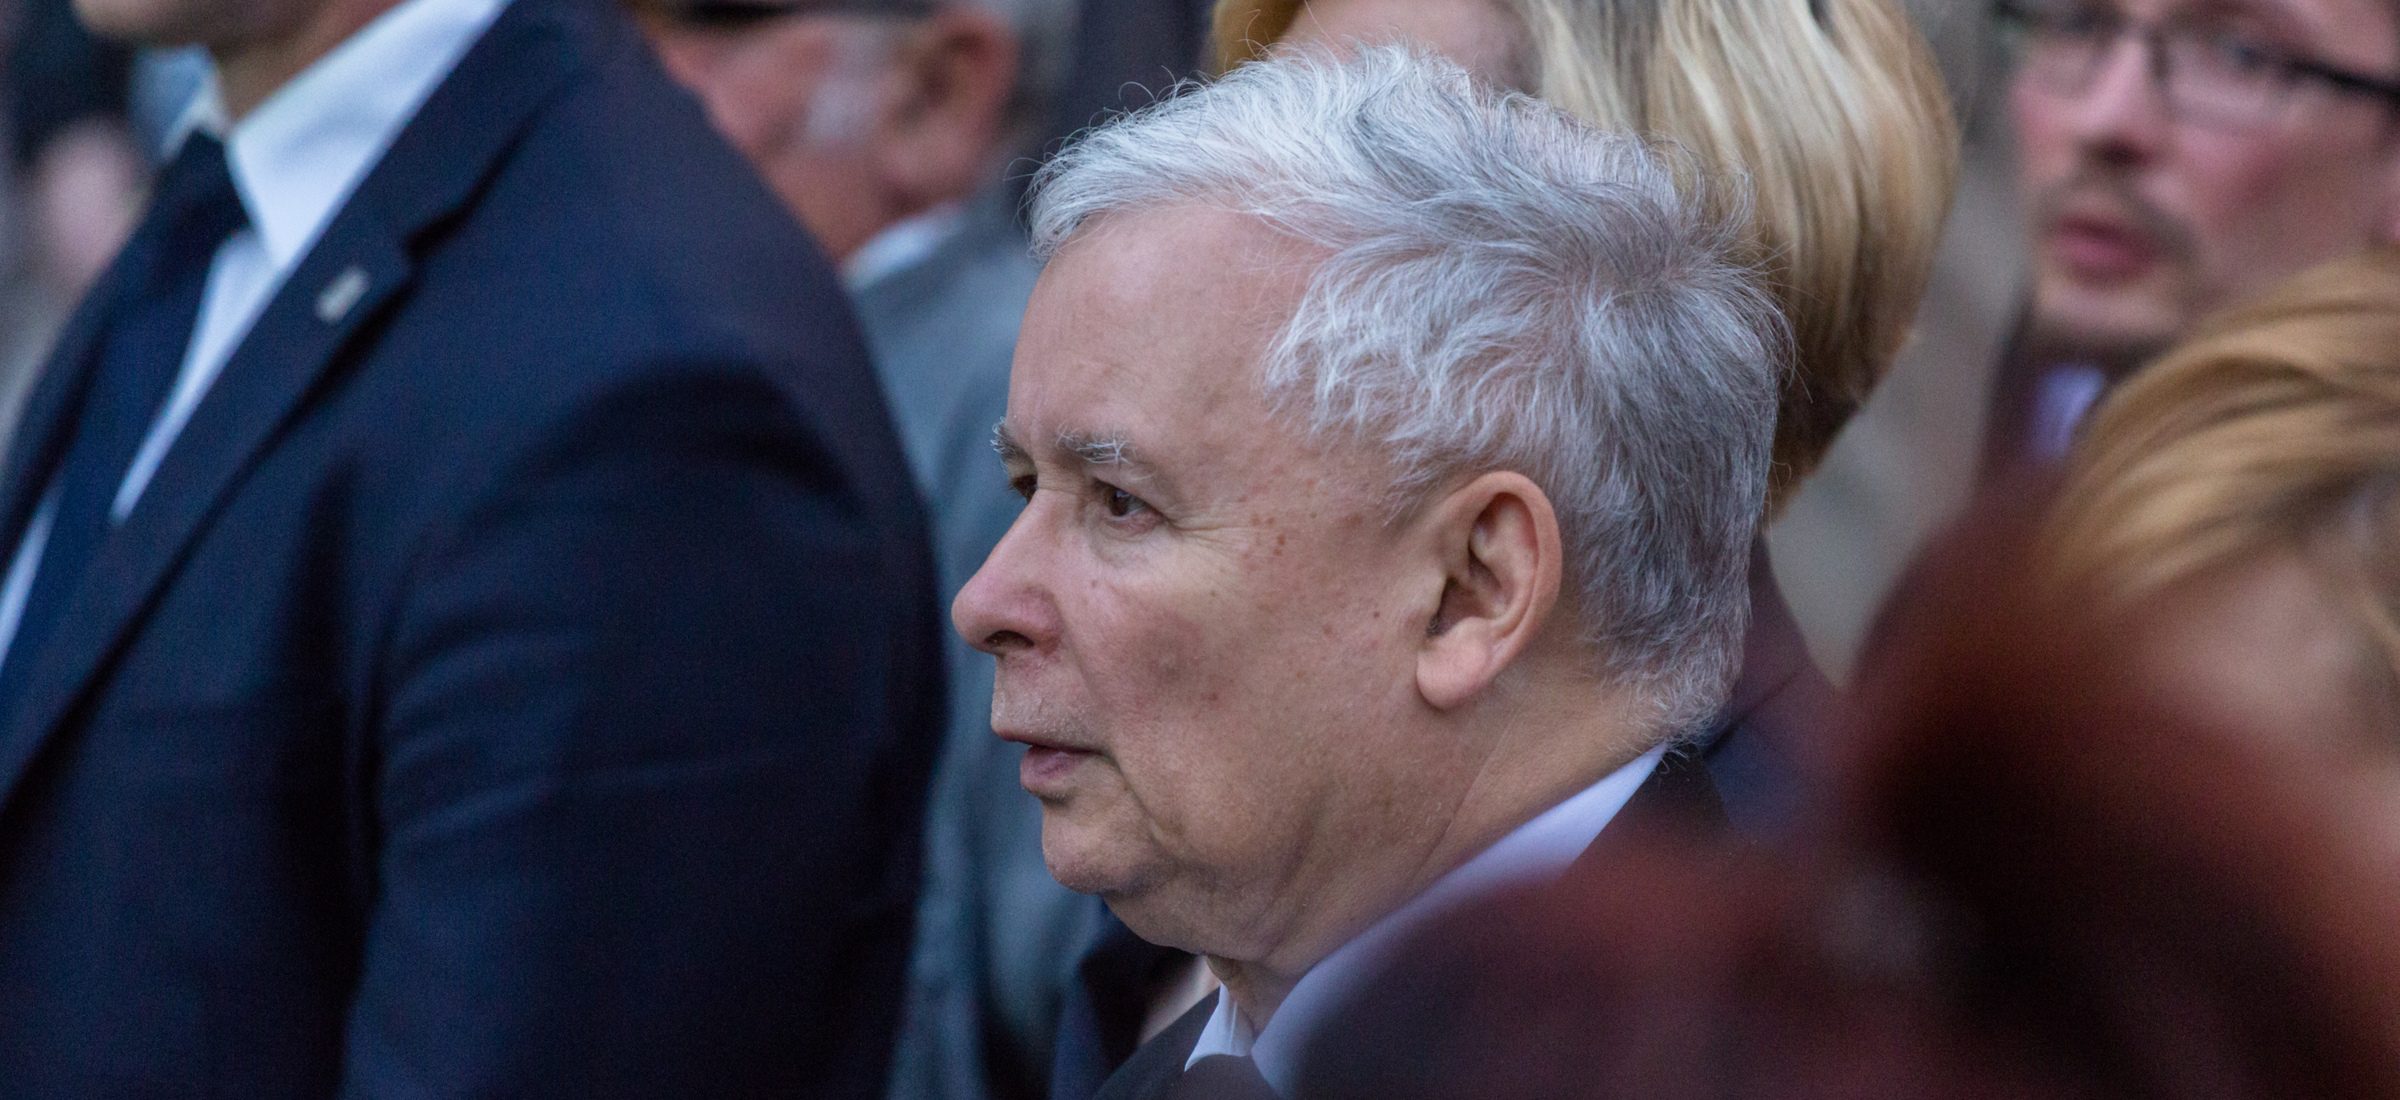 Jarosław Kaczyński will keinen Film über sich selbst. Der PiS-Präsident fühlte sich verspottet 17